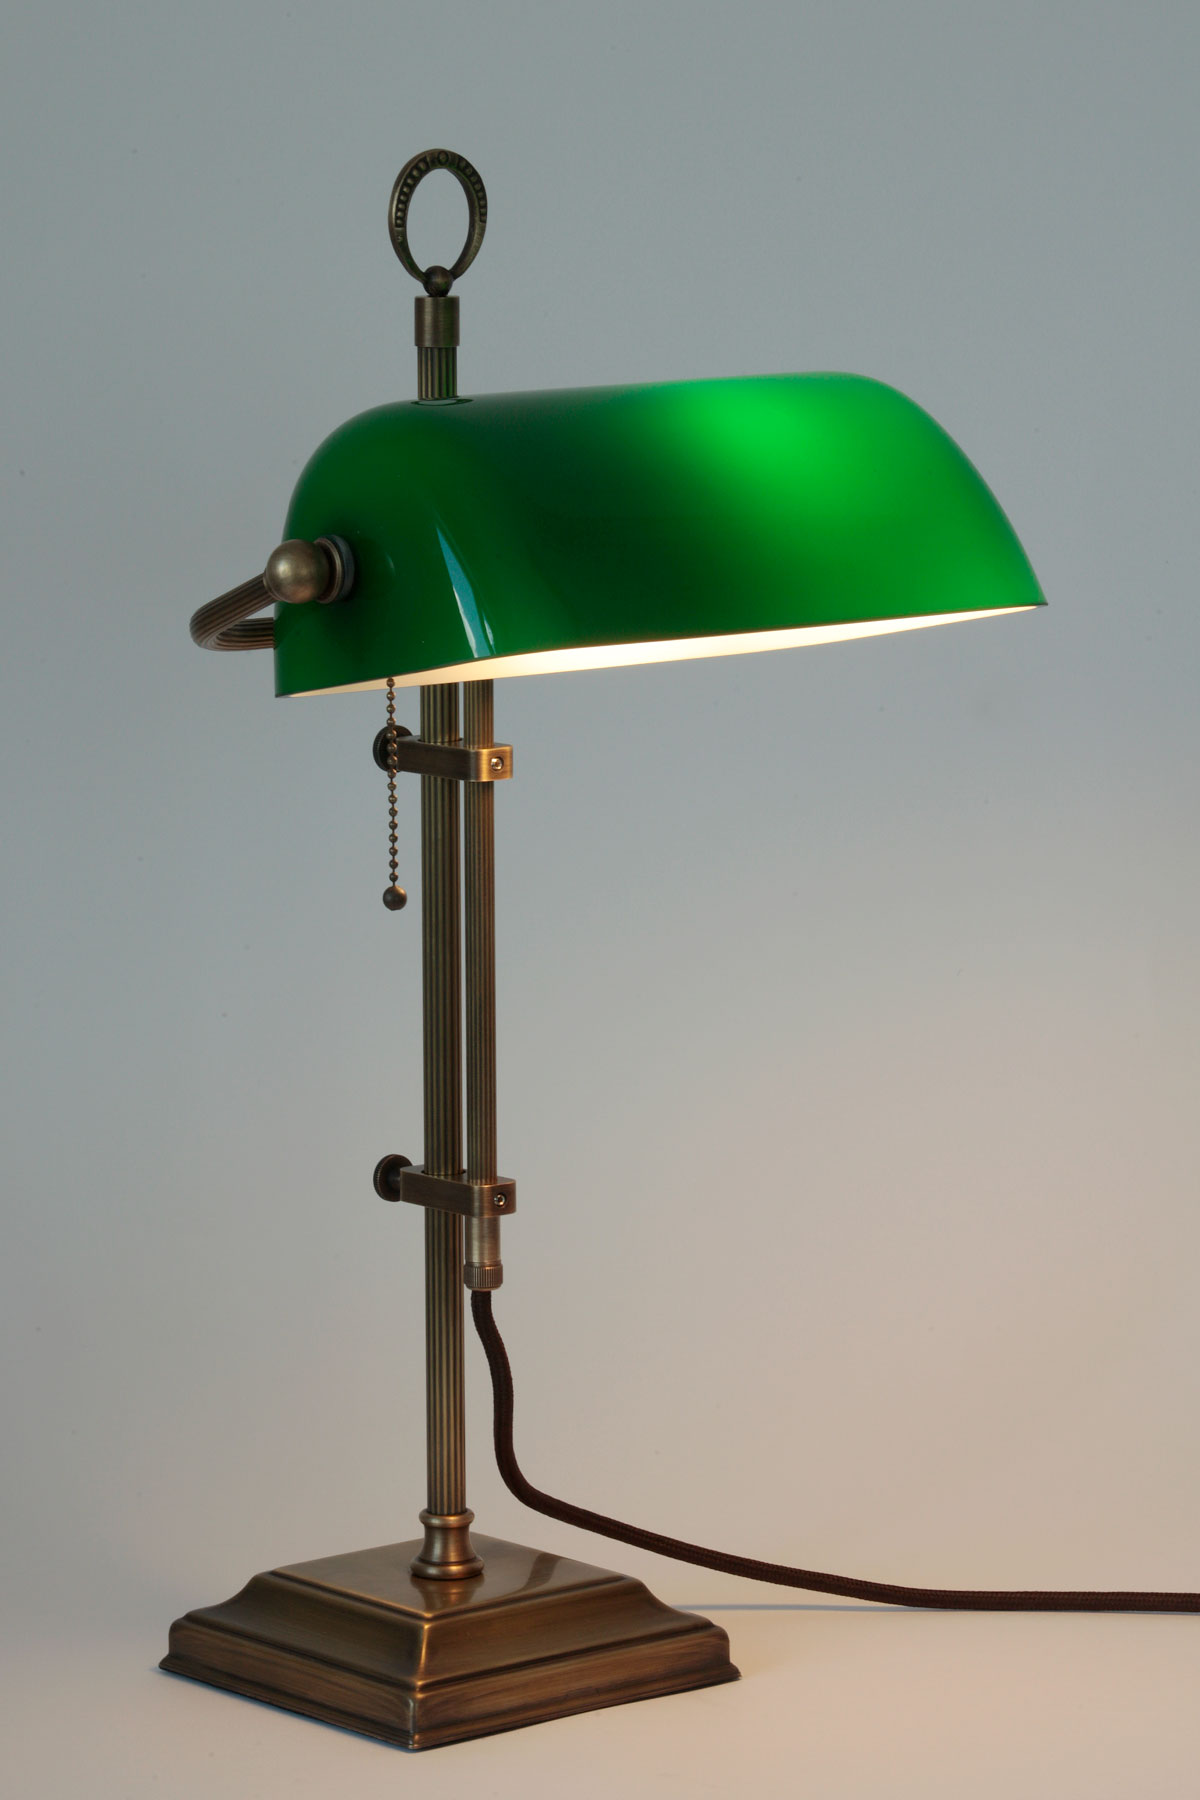 Banker’s Lamp – klassische Schreibtischleuchte mit Glasschirm: Der Schirm ist in der Höhe verstellbar von ca. 35 bis 58 cm